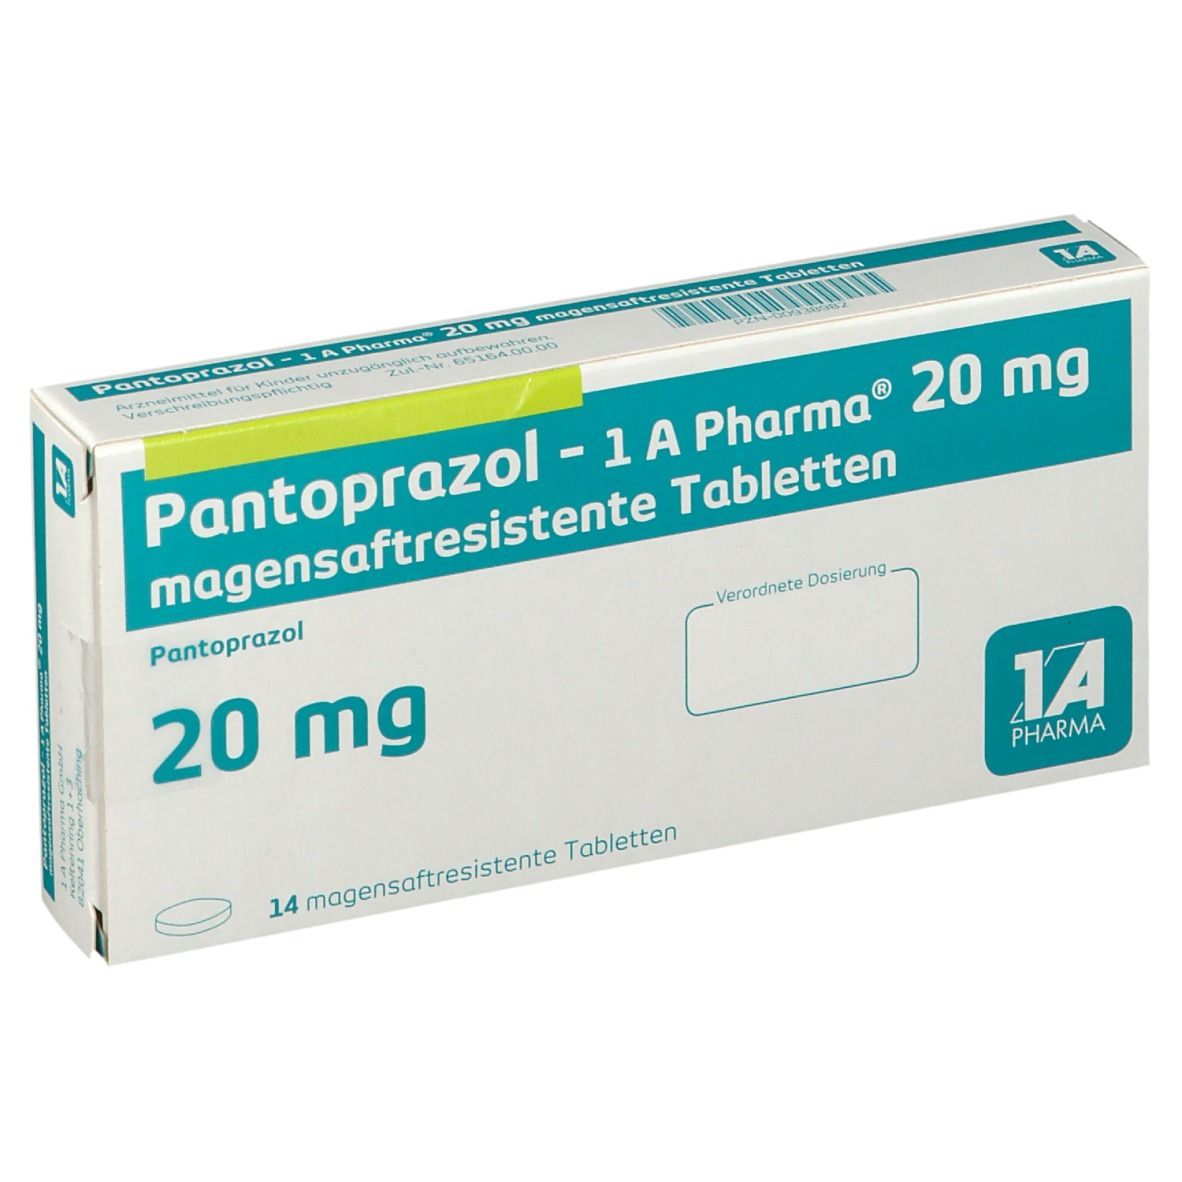 Pantoprazol 1A Pharma® 20Mg